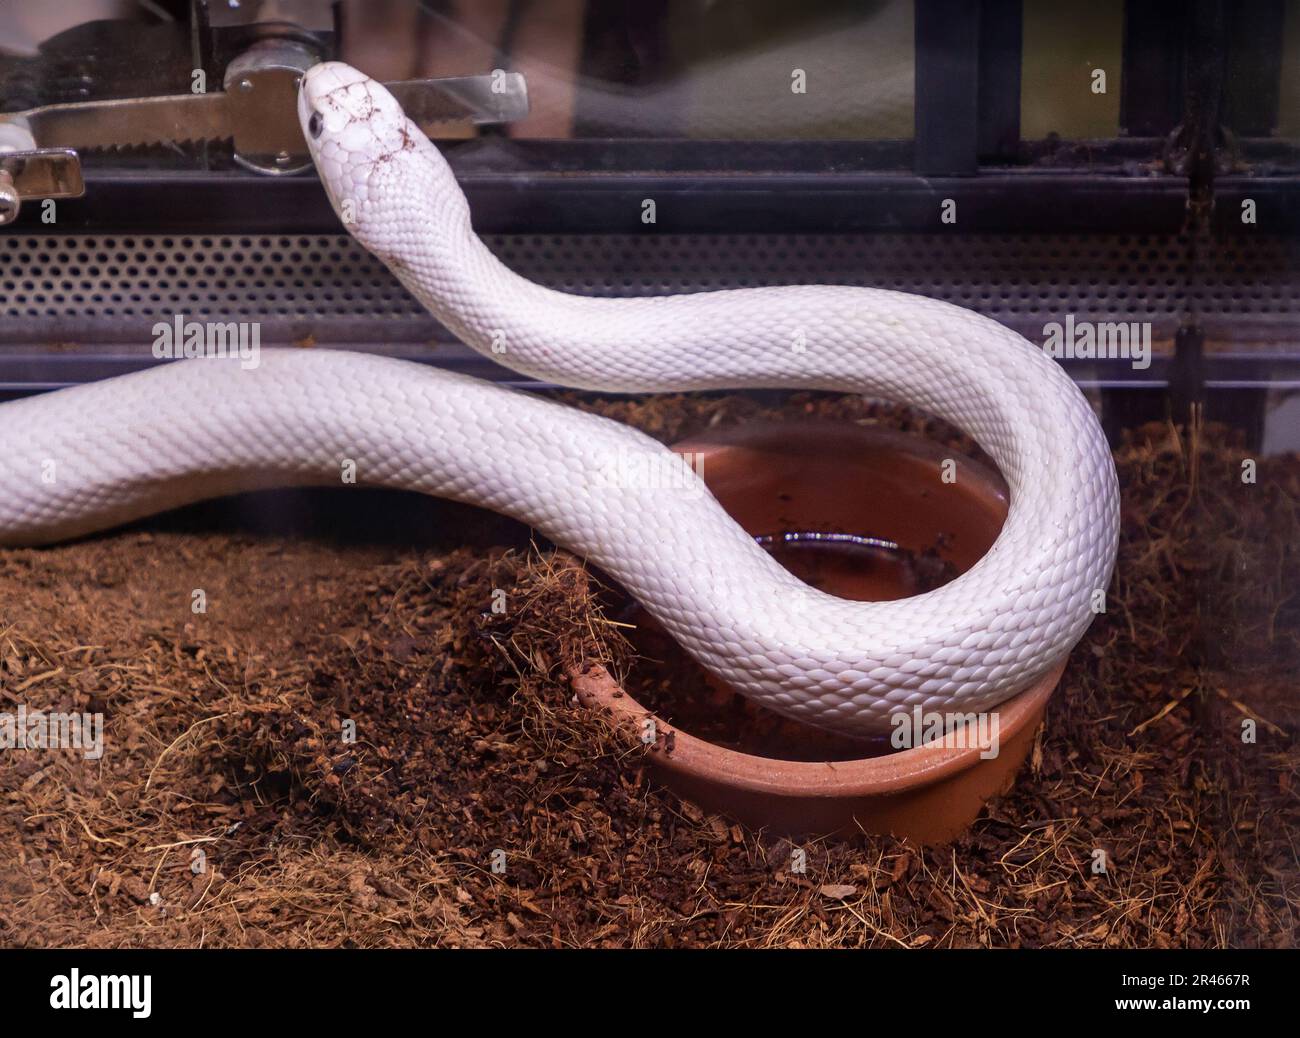 Le serpent Albino viper de la famille colubridae tient comme un animal de compagnie dans le terrarium de verre à l'intérieur de la maison Banque D'Images